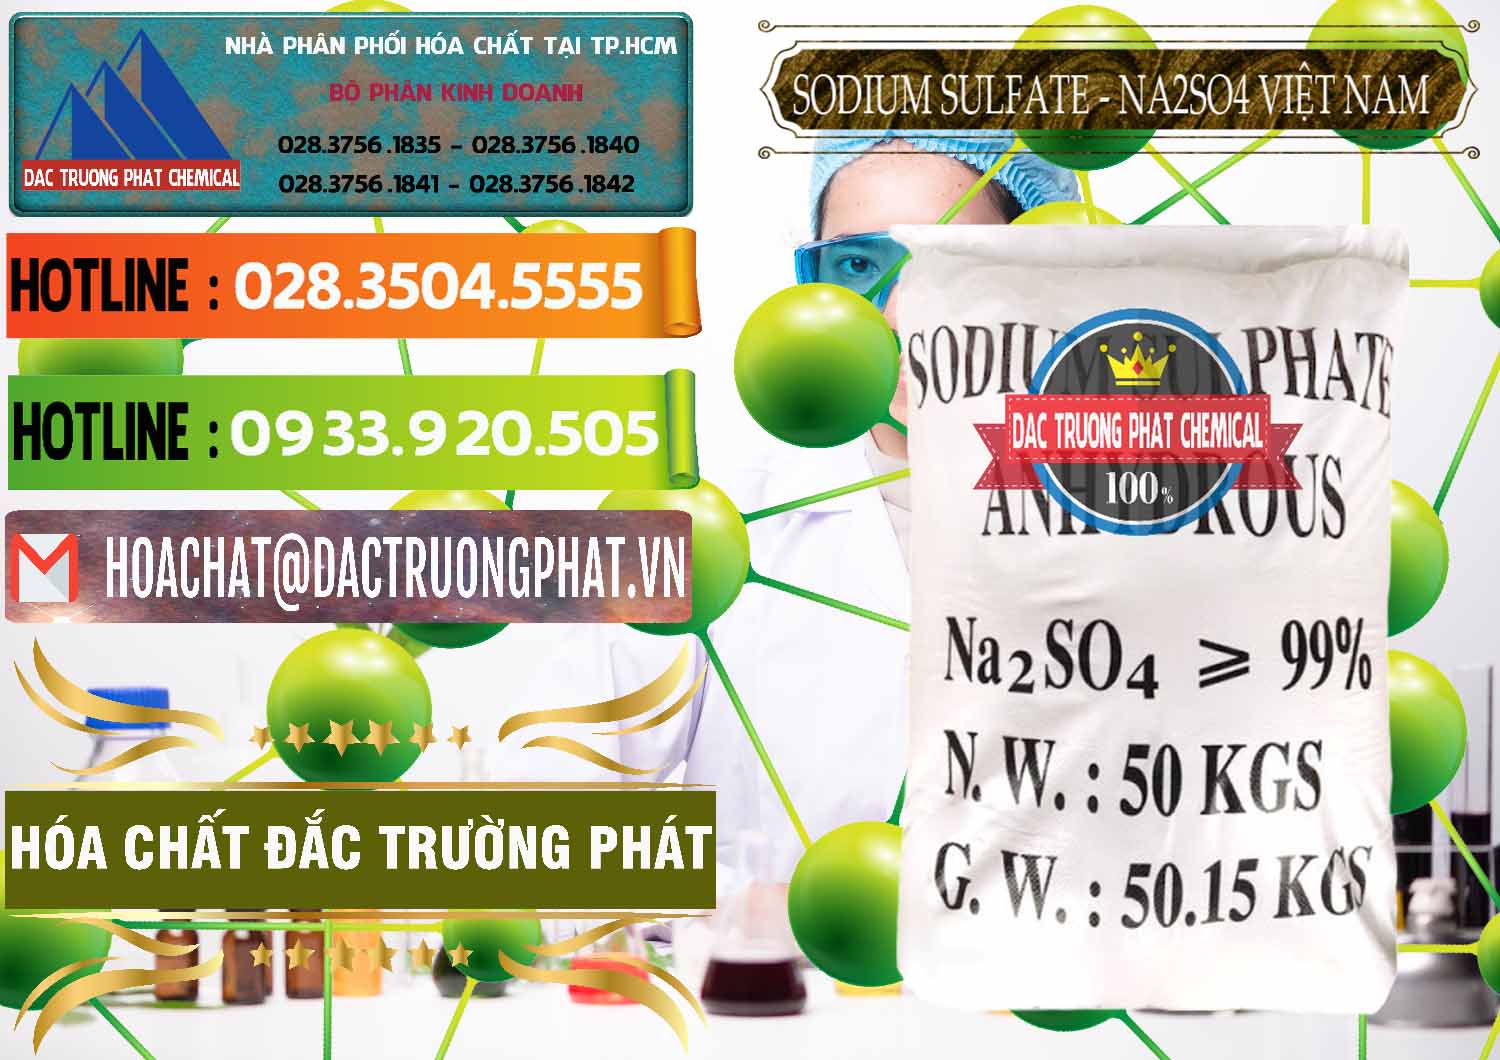 Đơn vị kinh doanh & bán Sodium Sulphate - Muối Sunfat Na2SO4 Việt Nam - 0355 - Đơn vị bán - phân phối hóa chất tại TP.HCM - cungcaphoachat.com.vn